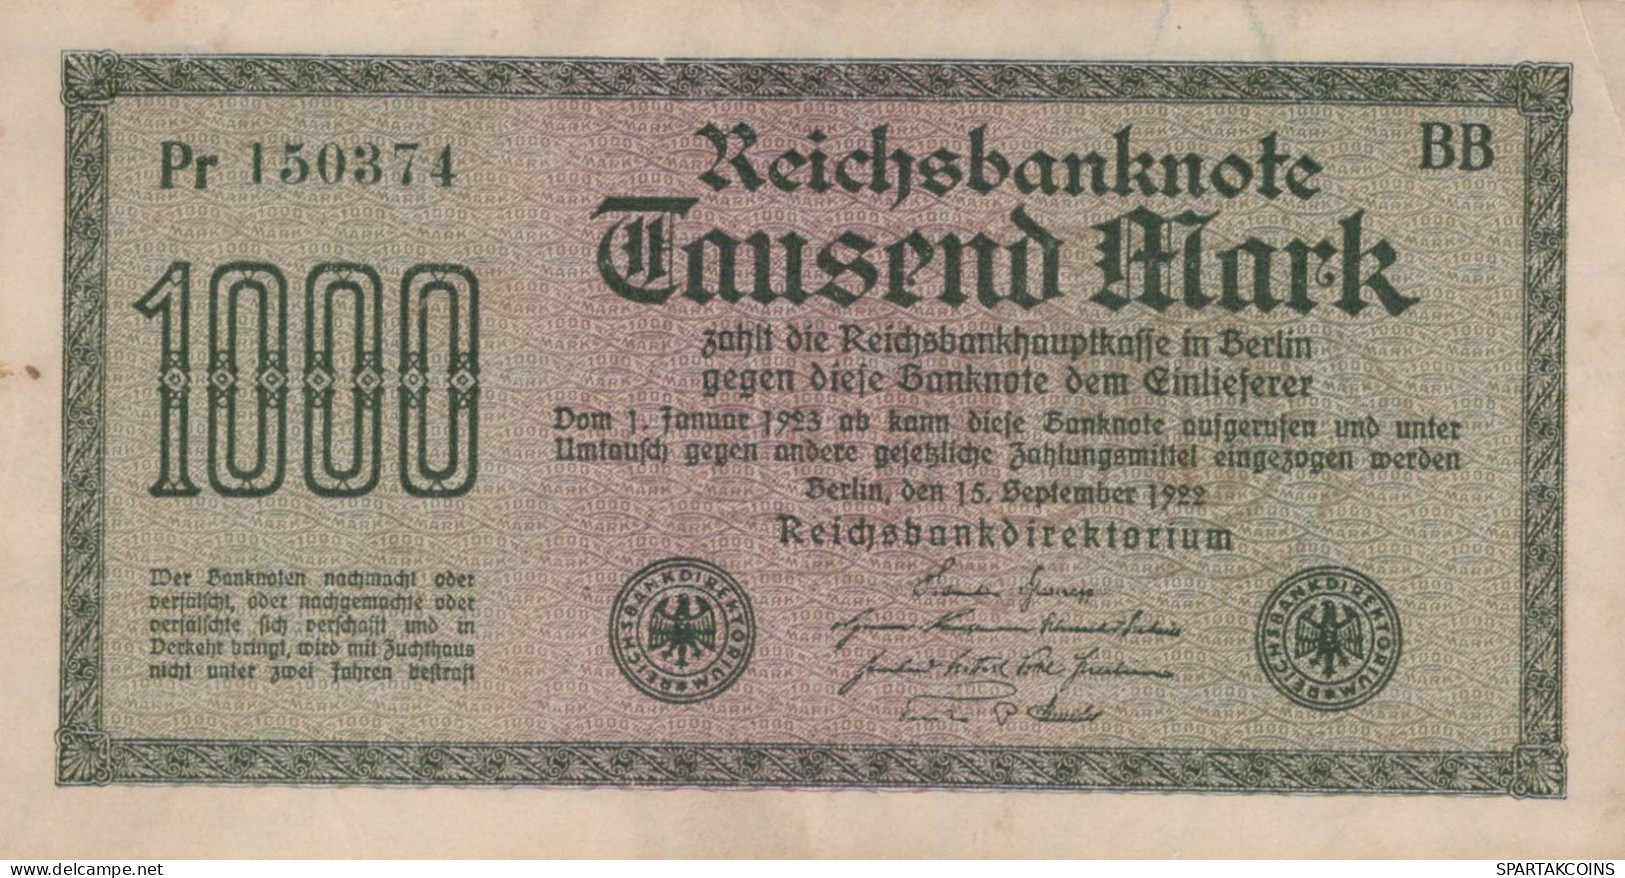 1000 MARK 1922 Stadt BERLIN DEUTSCHLAND Papiergeld Banknote #PL424 - [11] Local Banknote Issues